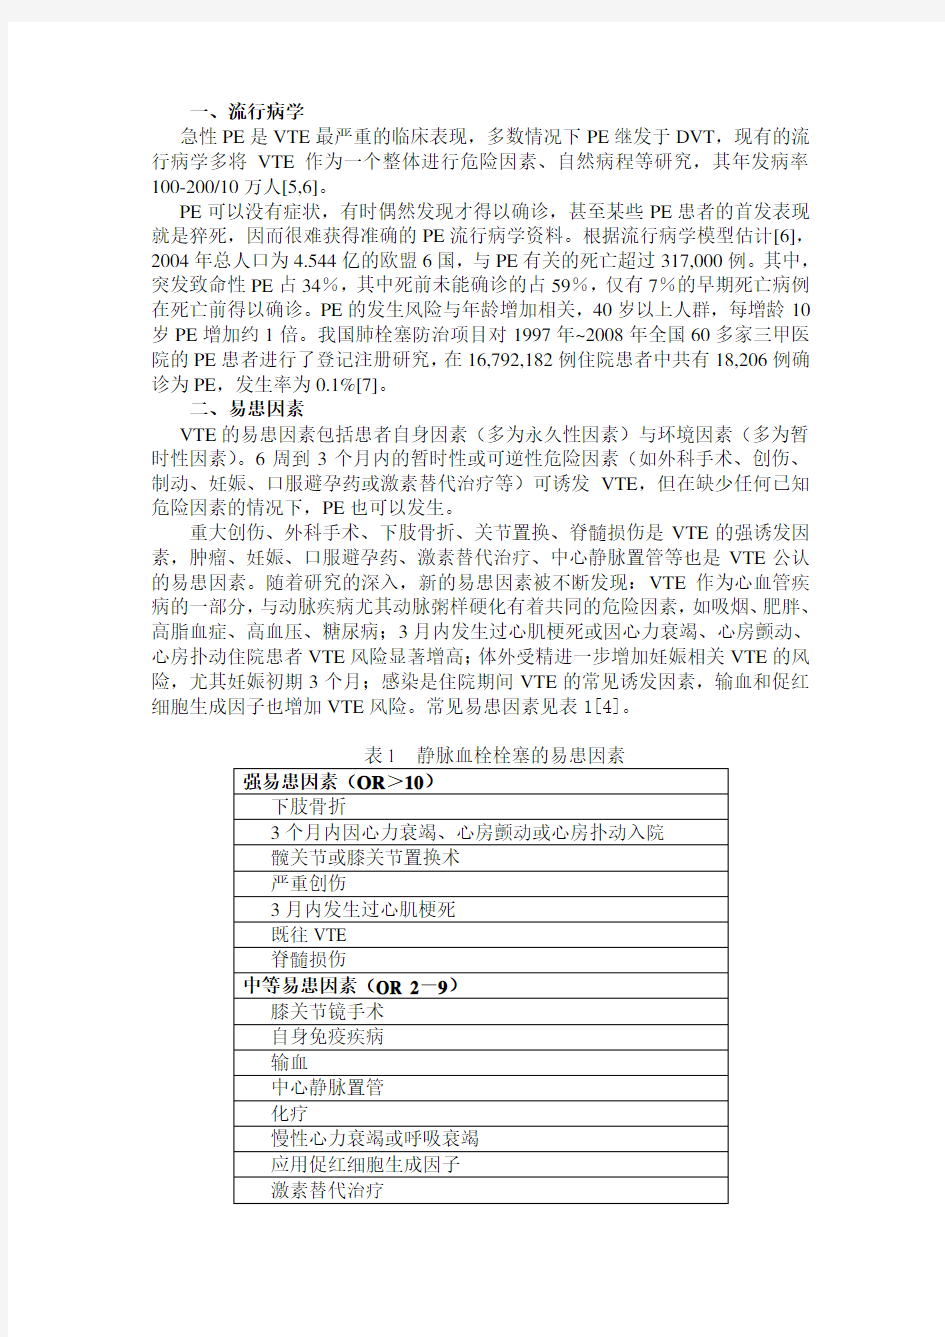 中国急性肺栓塞诊断与治疗指南(2015)